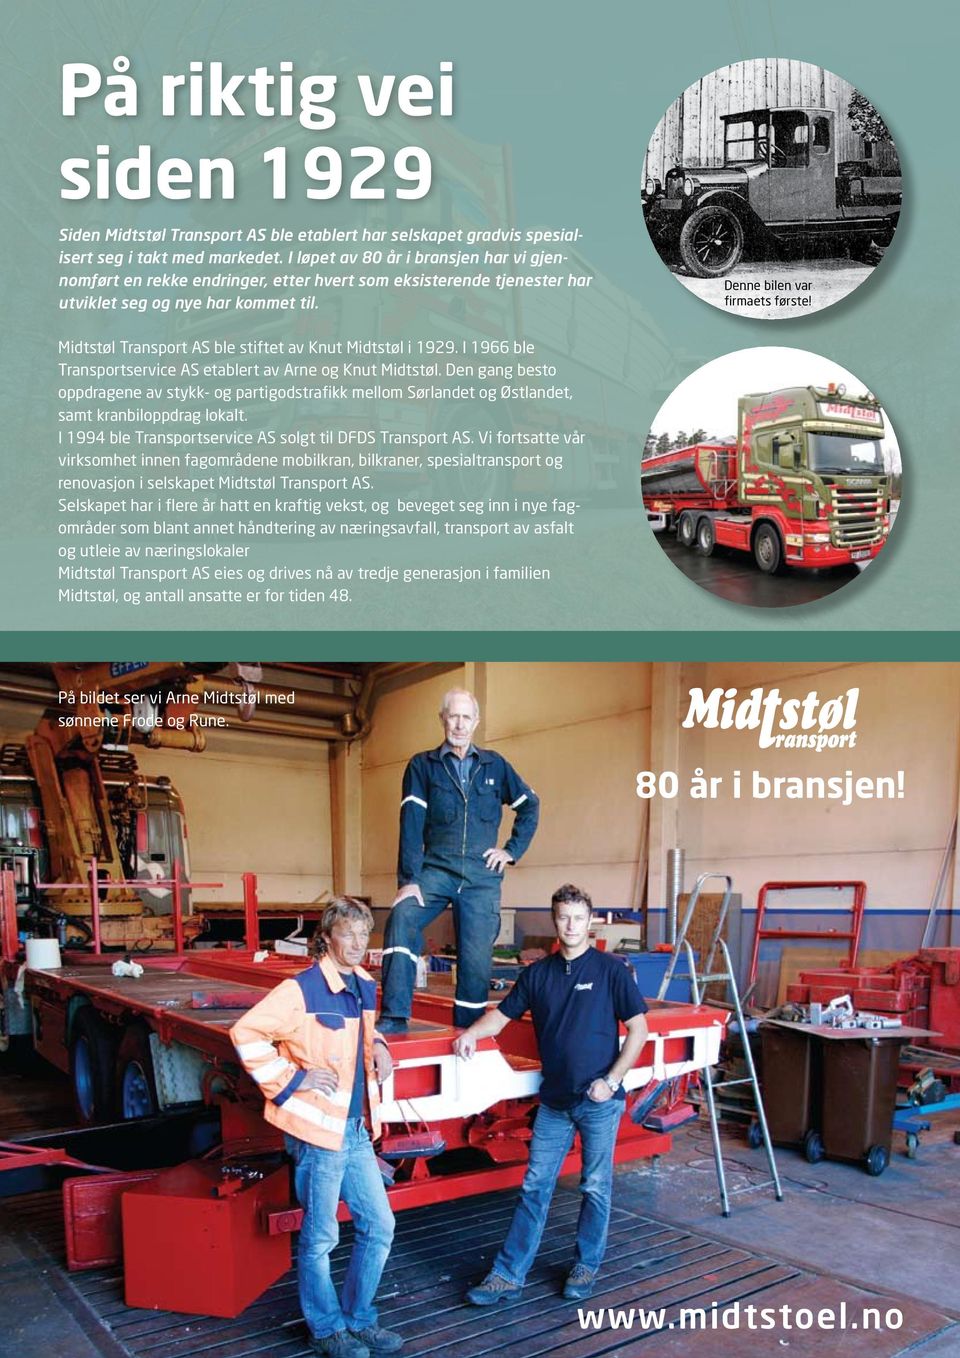 Midtstøl Transport AS ble stiftet av Knut Midtstøl i 1929. I 1966 ble Transportservice AS etablert av Arne og Knut Midtstøl.